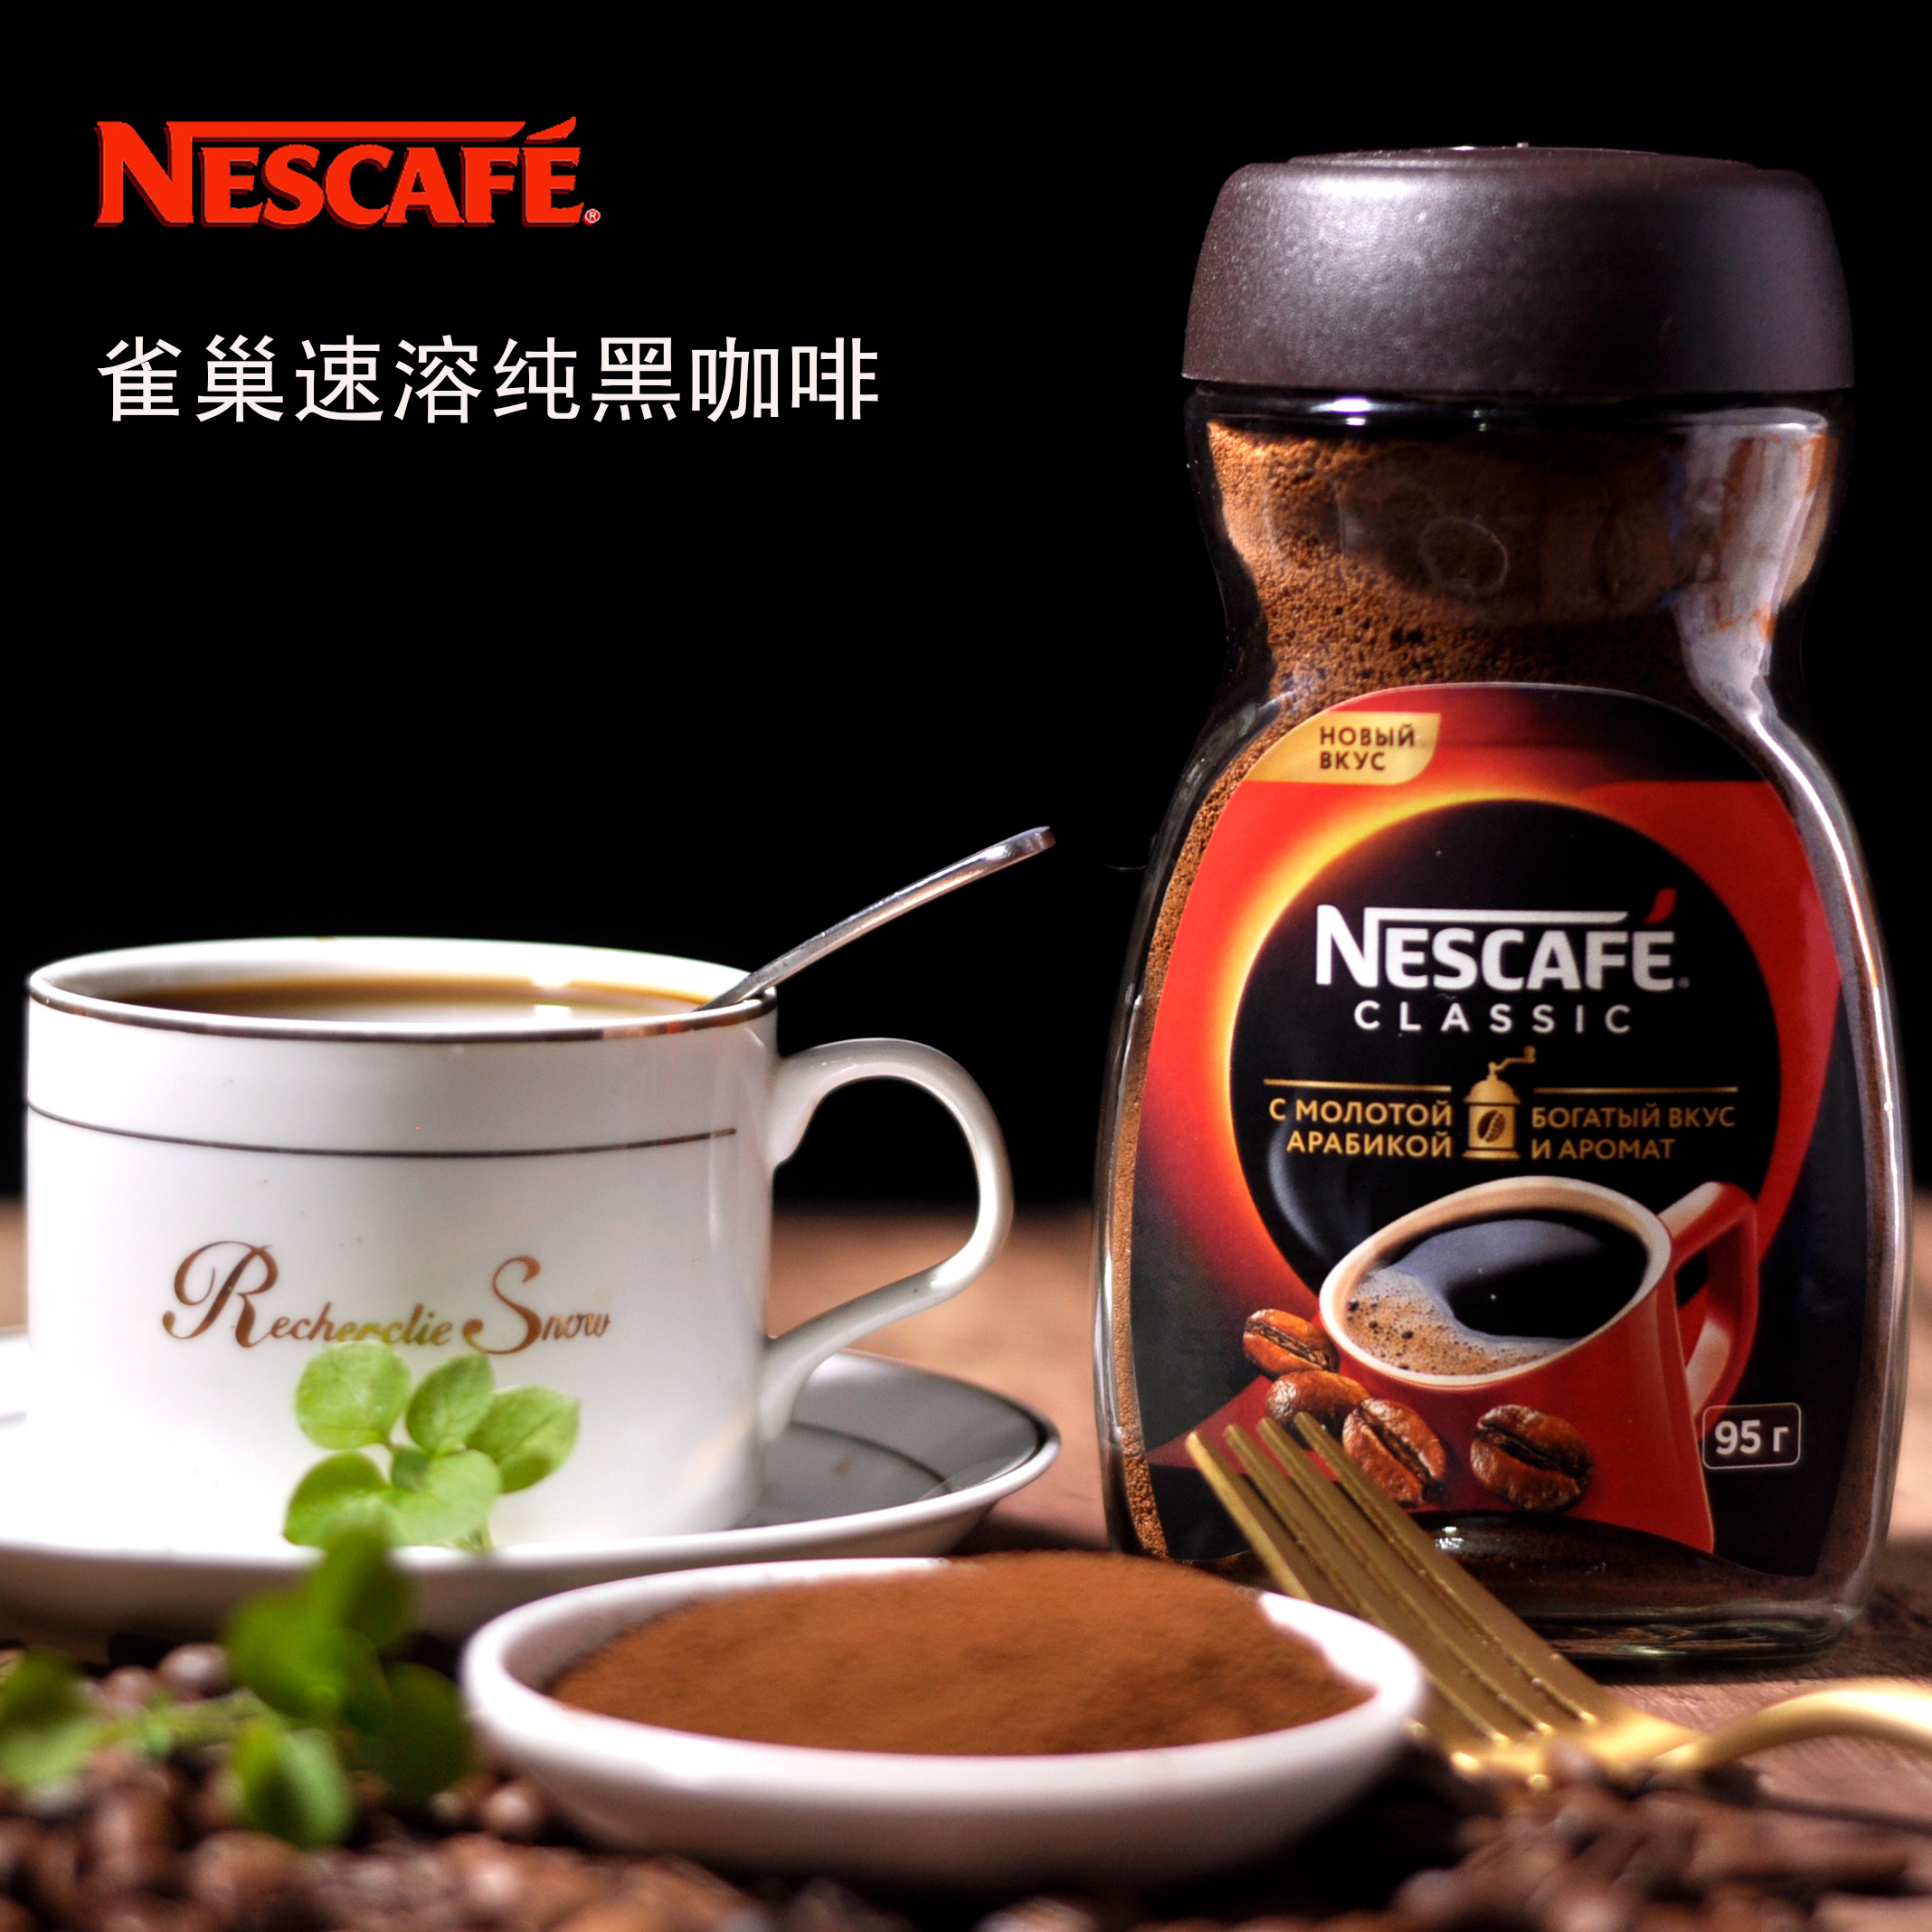 雀巢醇品黑咖啡俄罗斯原装进口速溶无蔗糖浓香苦咖啡提神95g瓶装